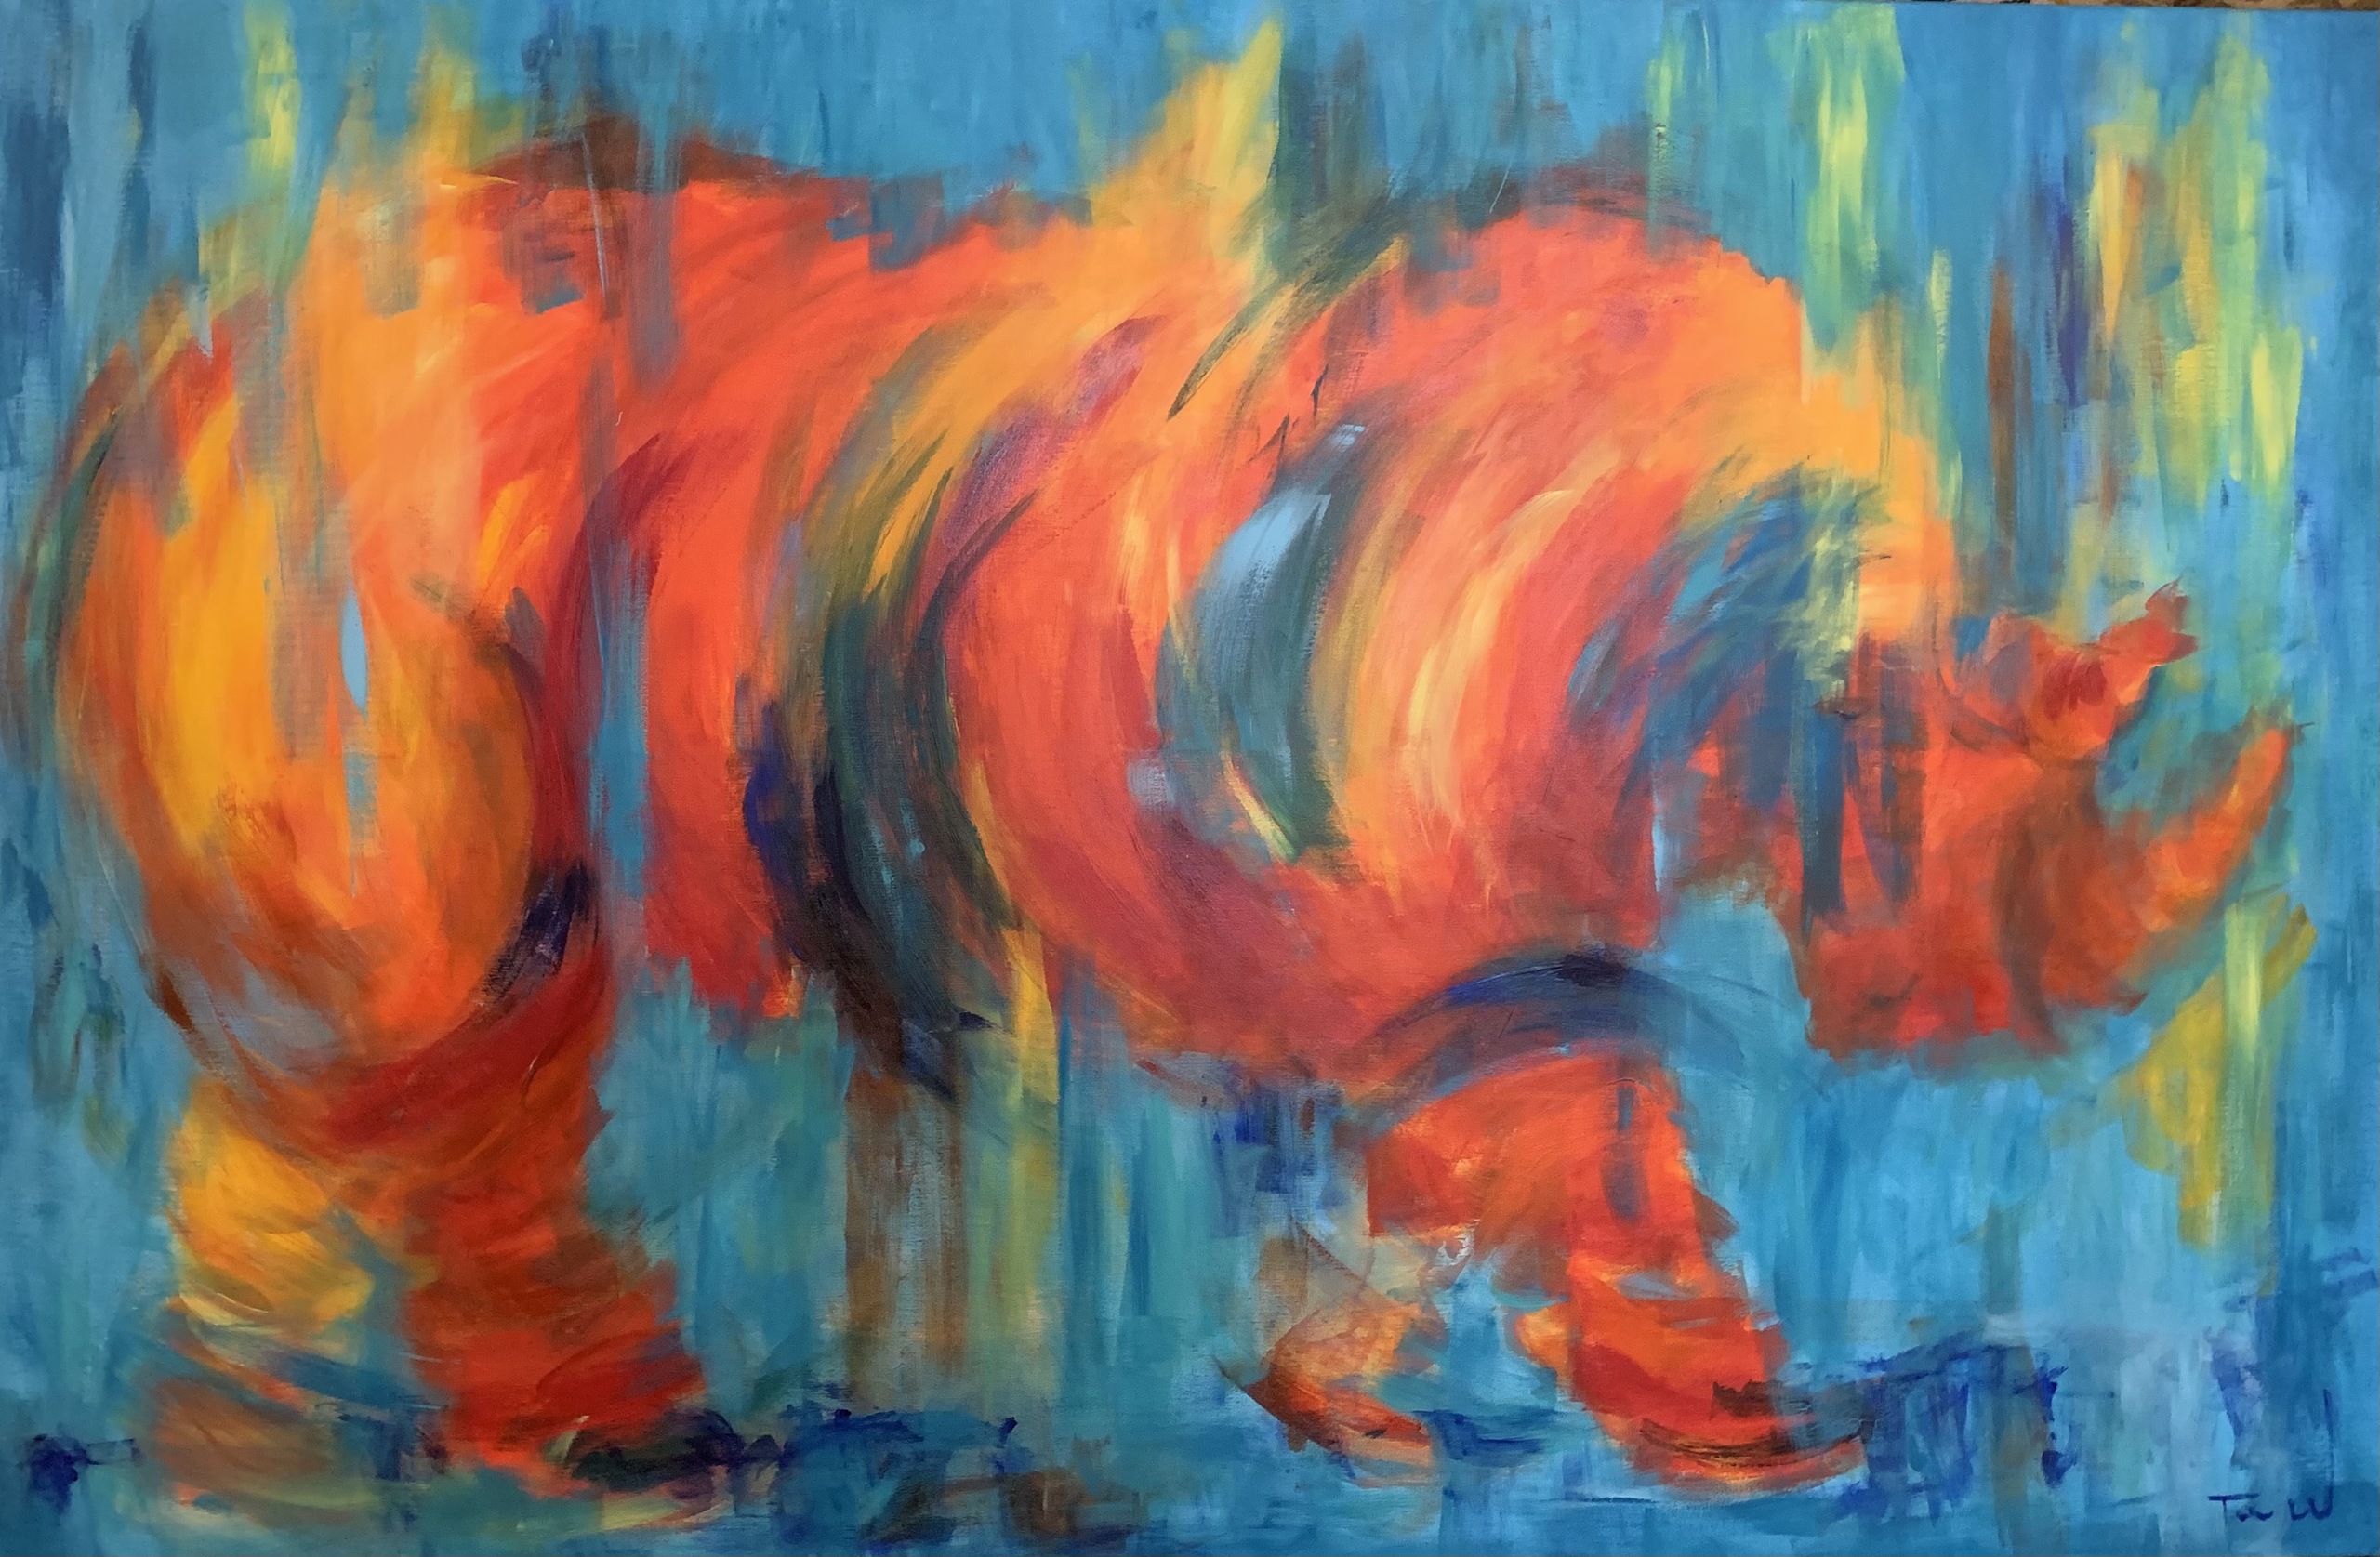 Stort abstrakt maleri, hvor man muligvis kan se et næsehorn i de spontane og transparente strøg.